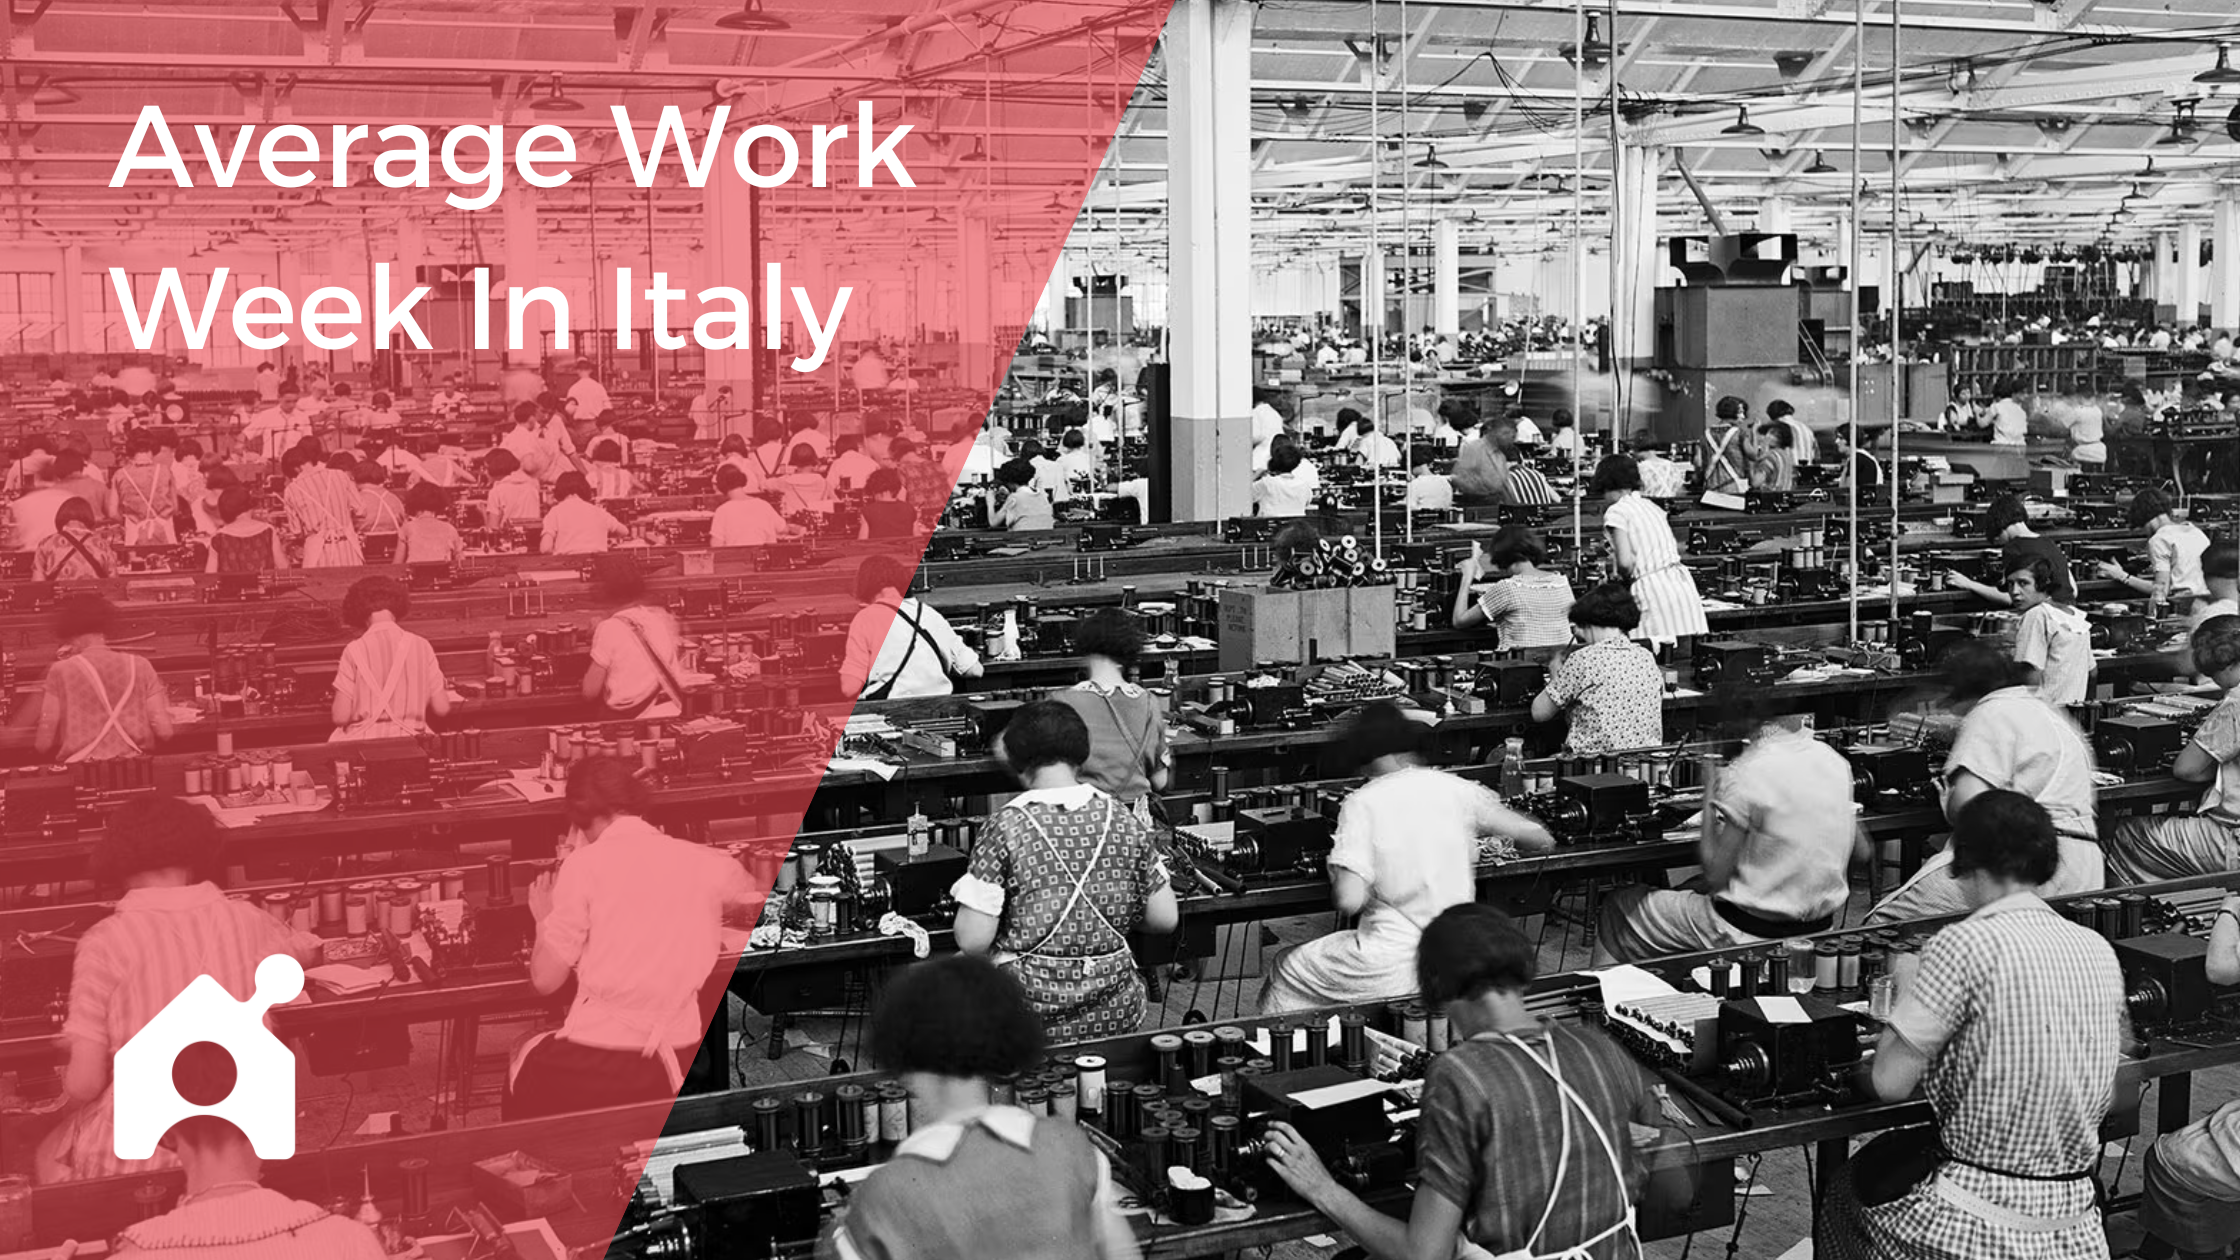 Average Work Week In Italy